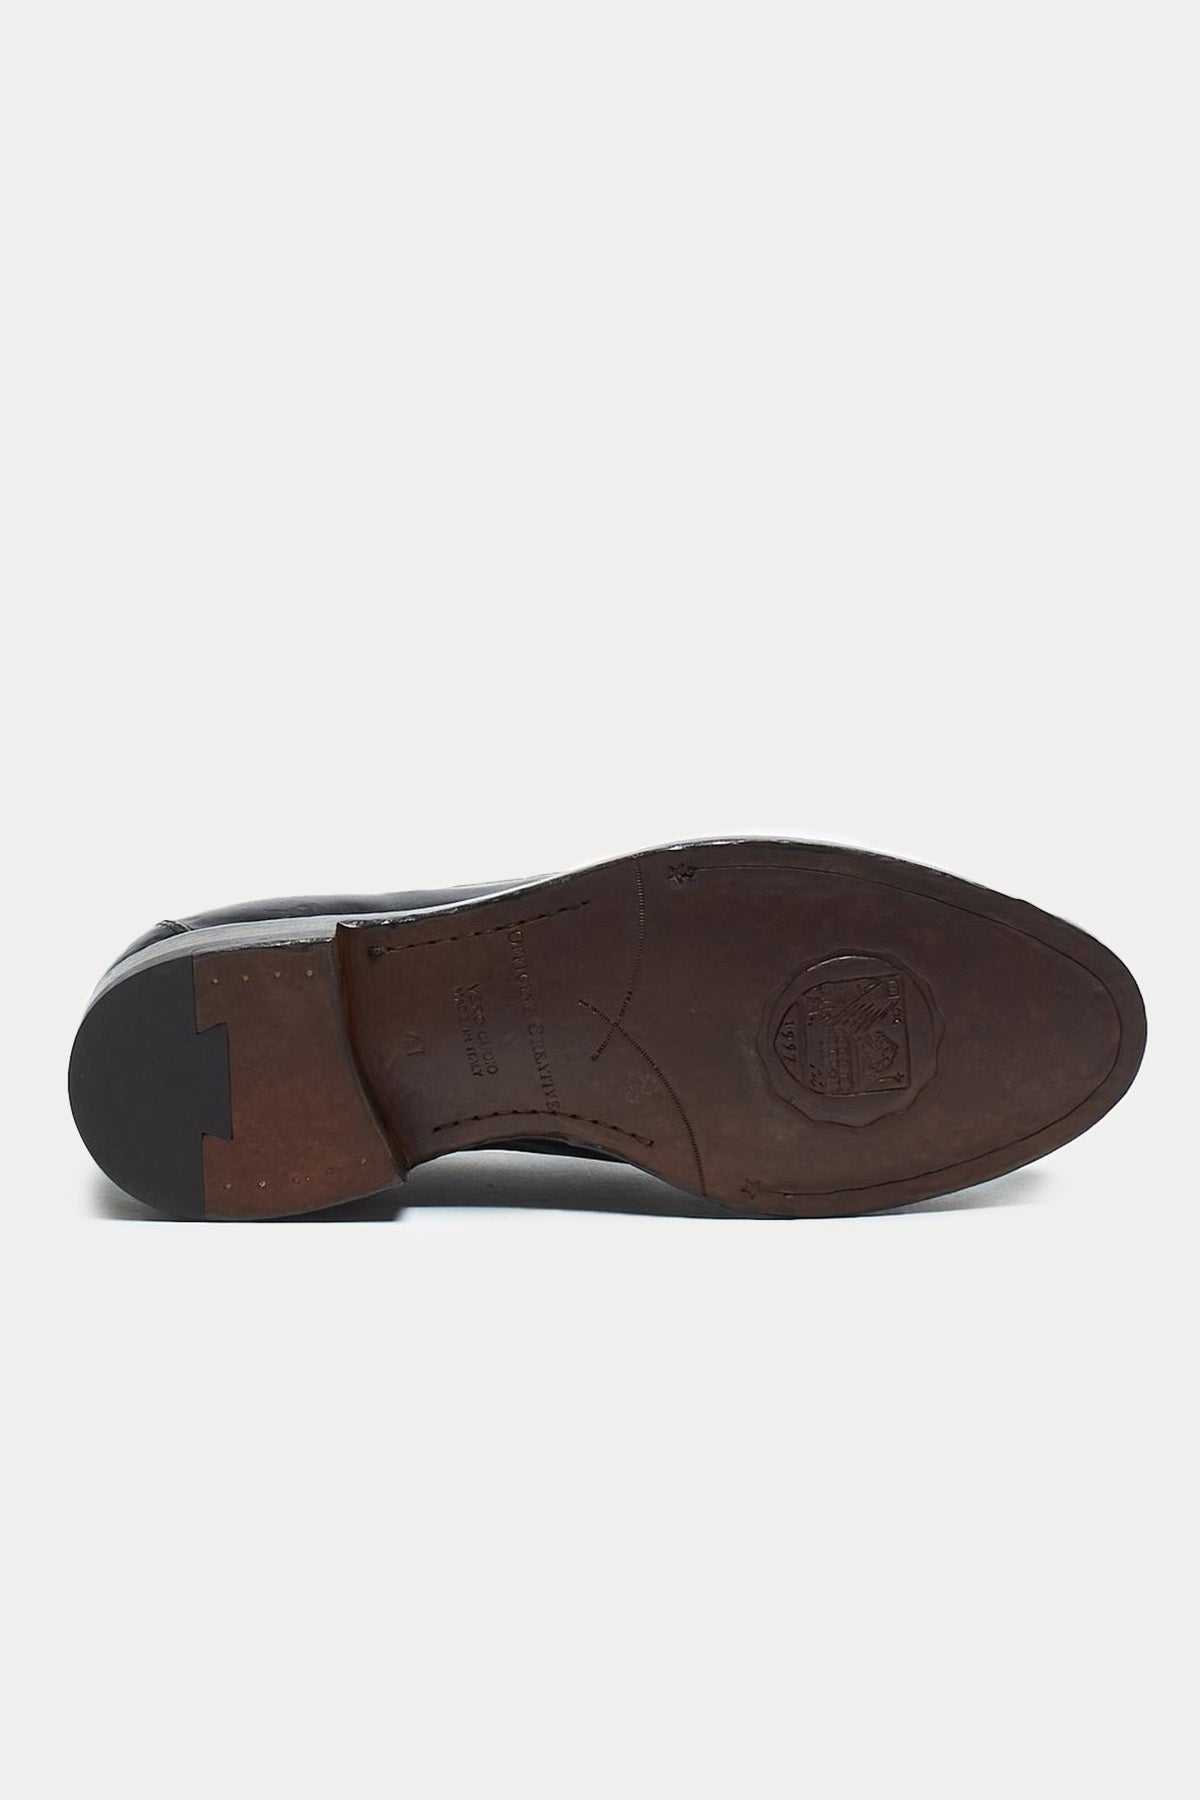 Officine Creative Tulane Deri Püsküllü Loafer Ayakkabı